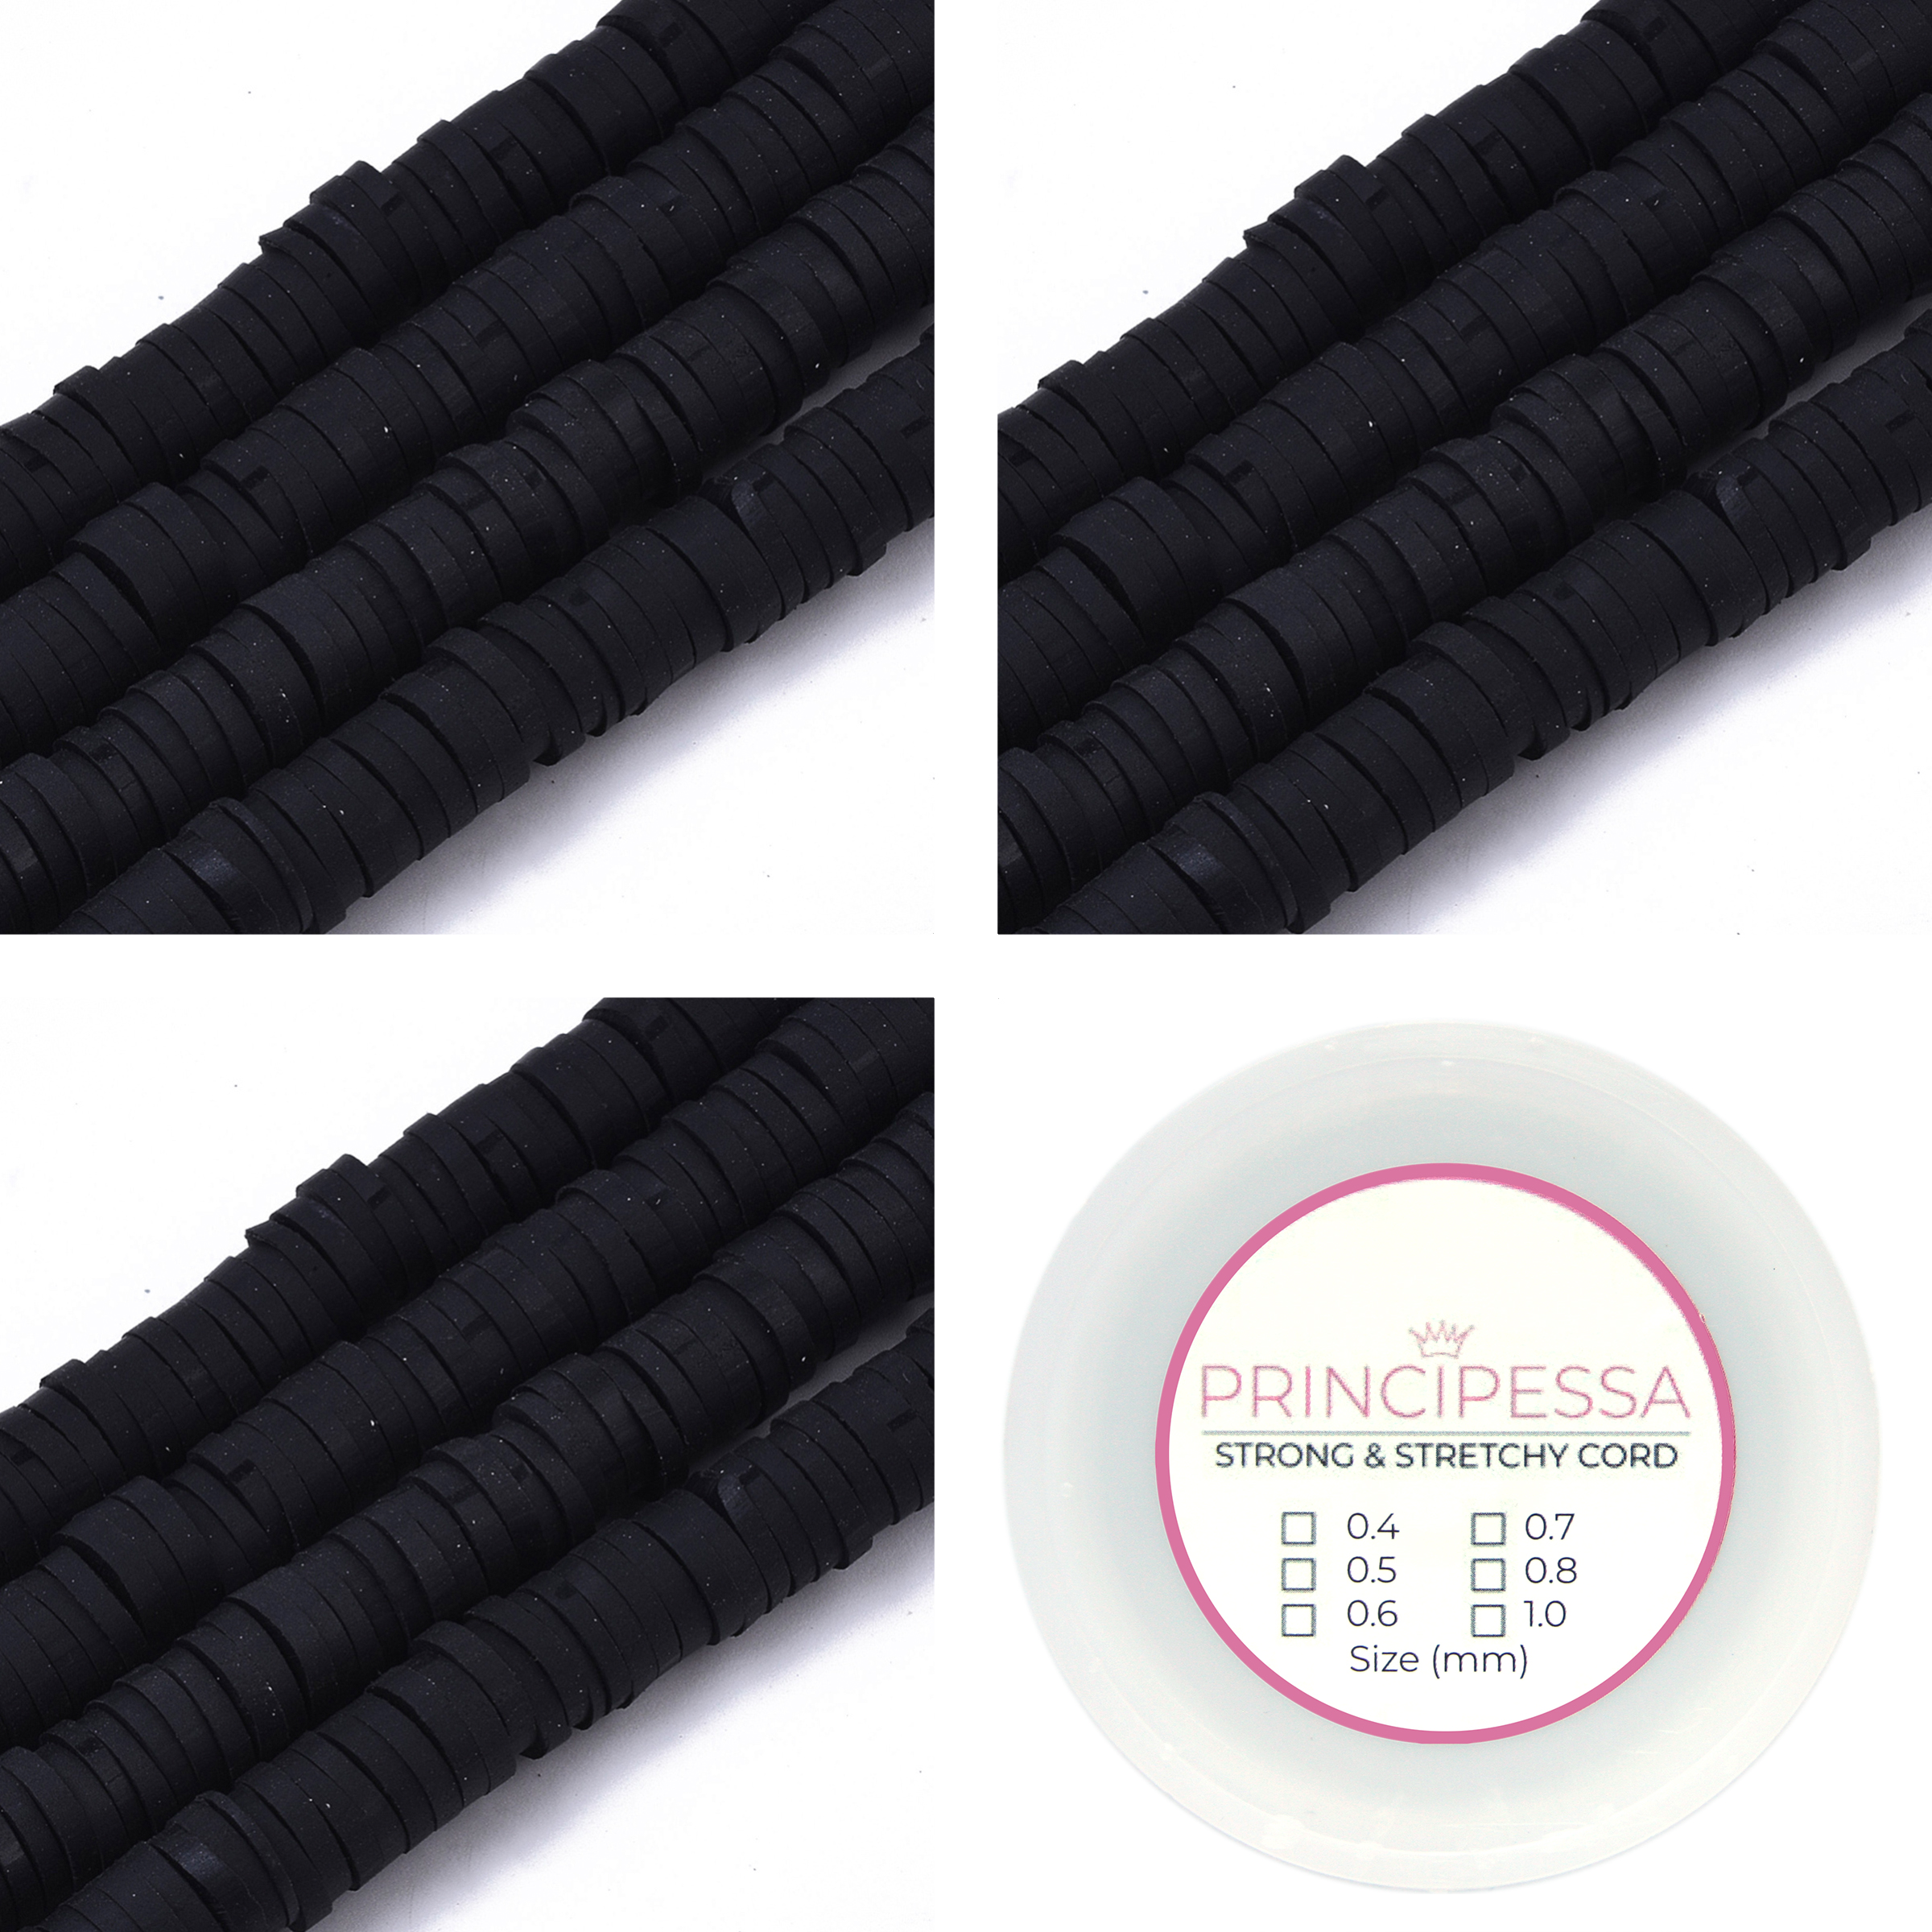 Principessa Katsuki kralen met rol elastiek – 3 x Zwart – 1.150 kralen – Polymeer klei – 6mm kralen